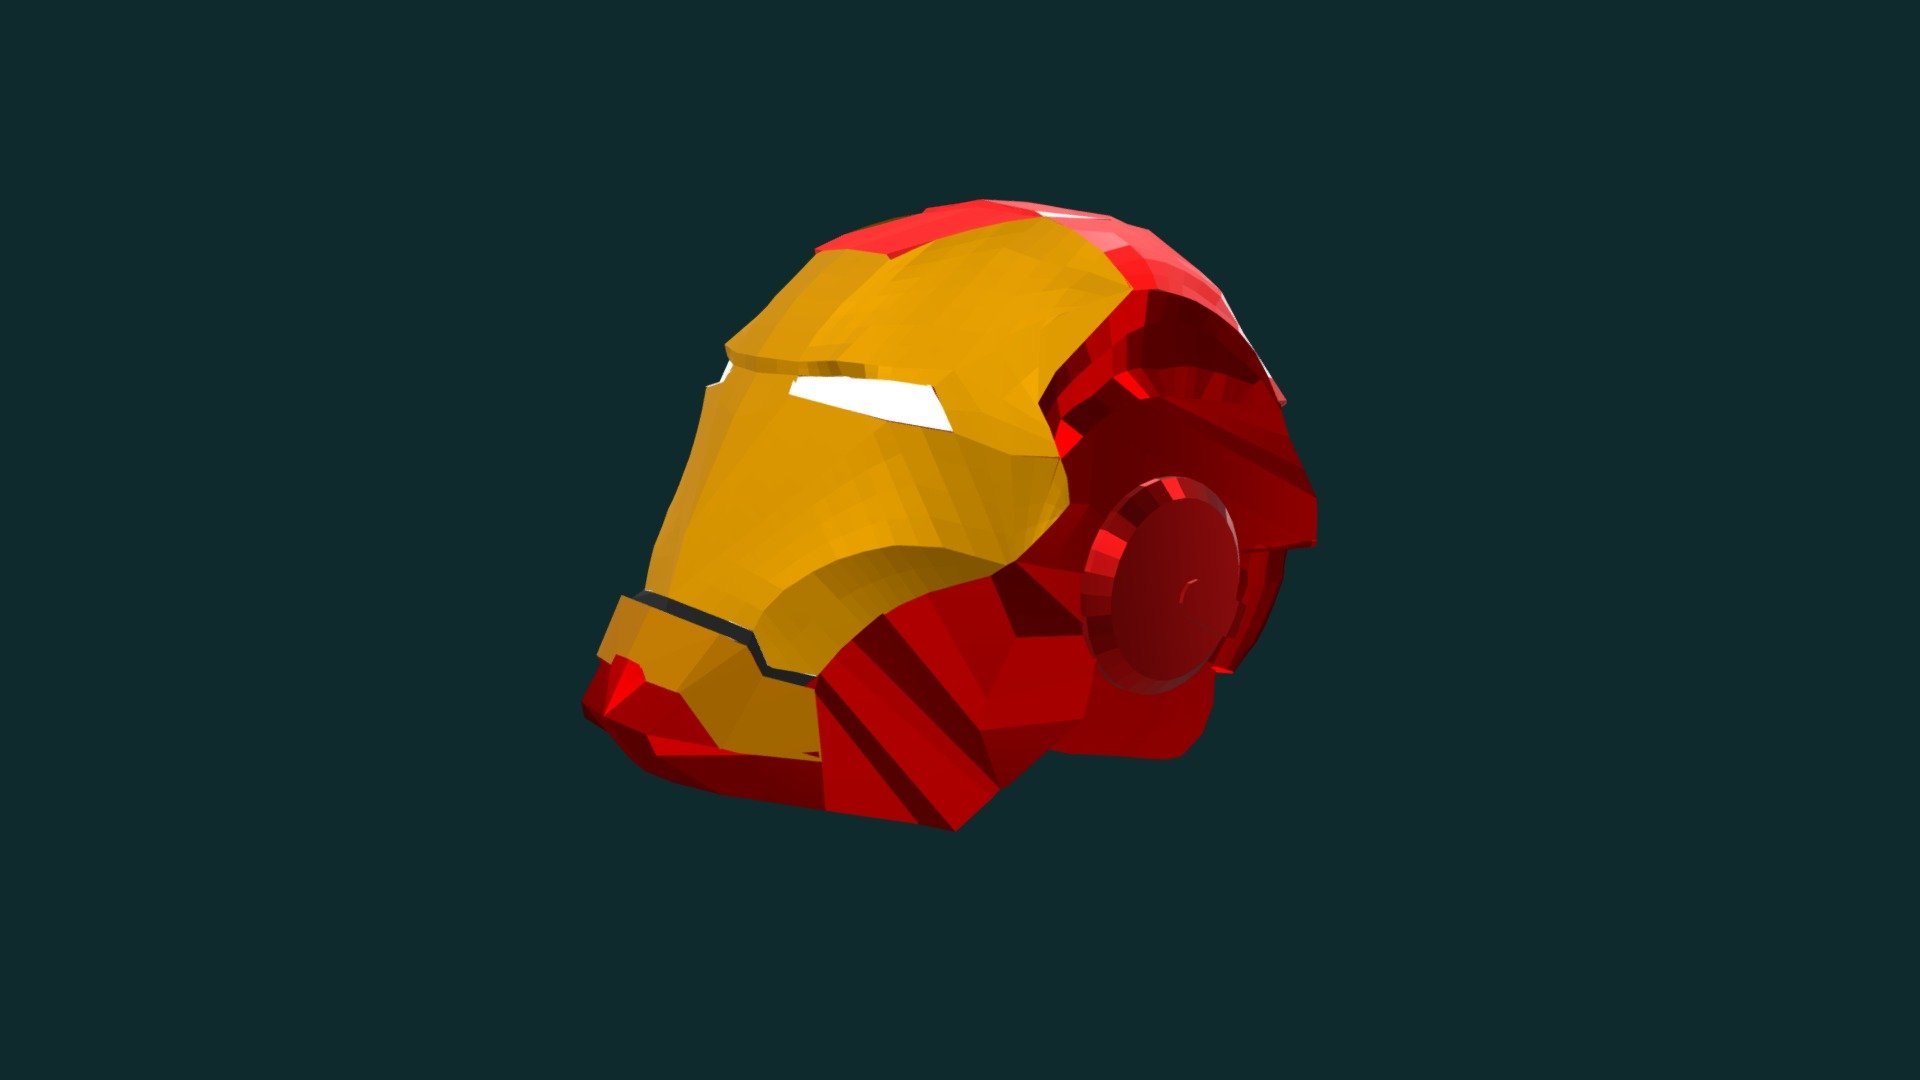 Iron Man's Mark III Helmet